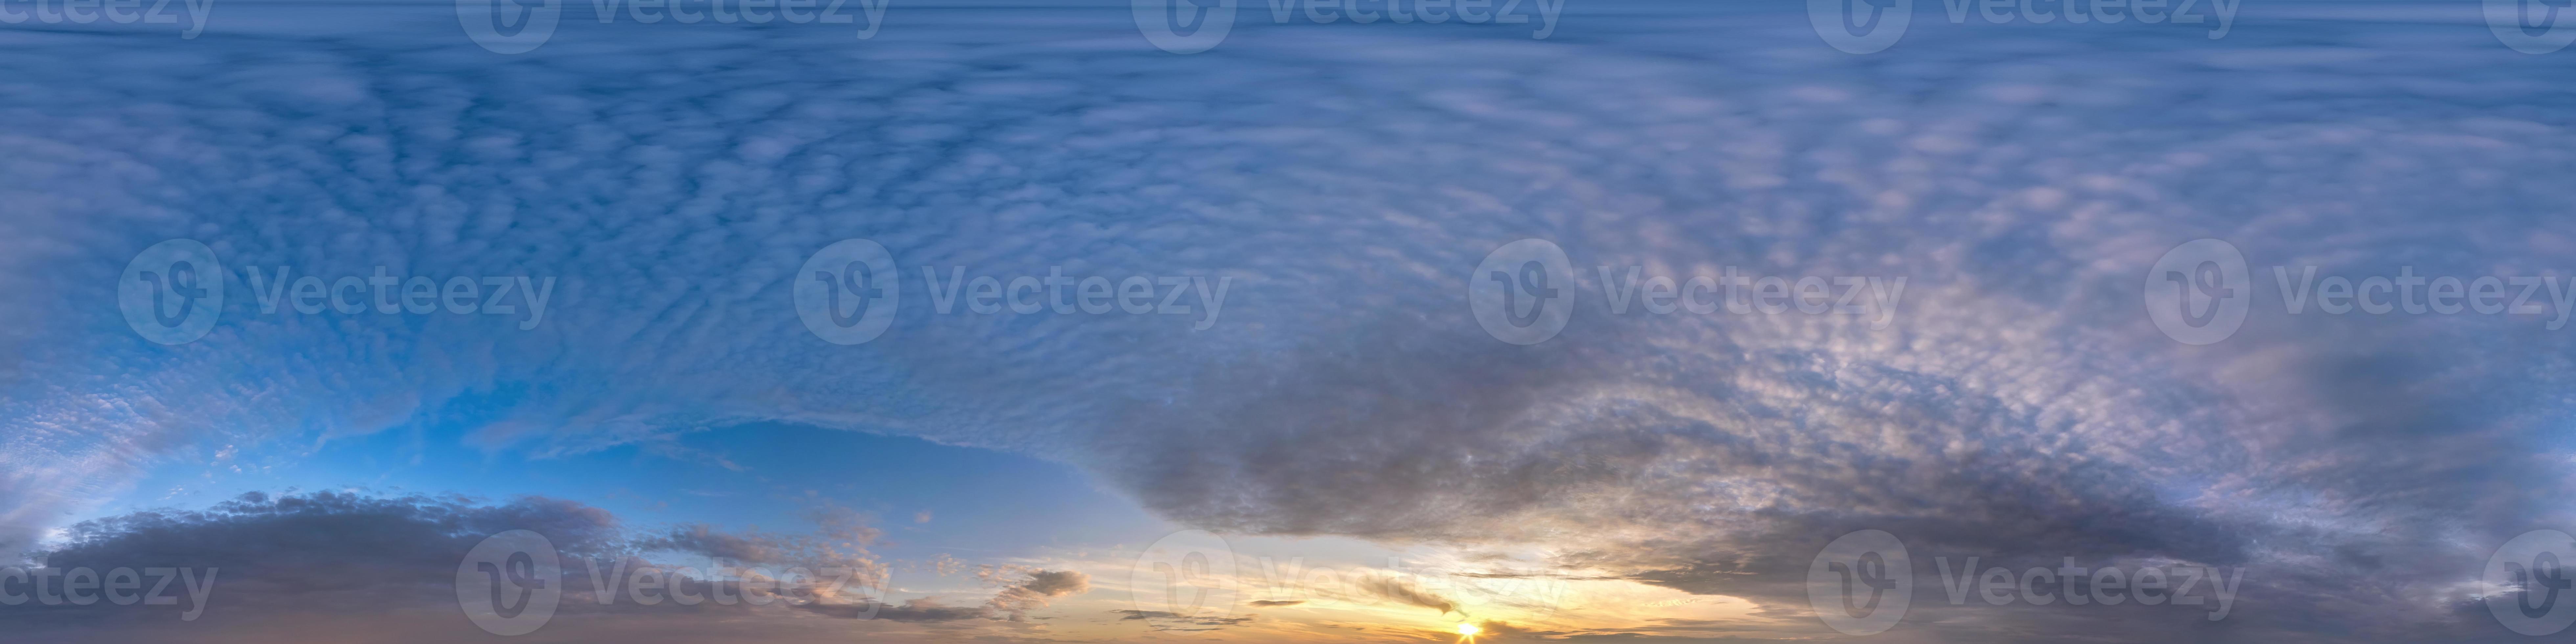 céu azul hdr 360 panorama com lindas nuvens brancas em projeção perfeita  com zênite para uso em gráficos 3d ou desenvolvimento de jogos como cúpula  do céu ou editar tiro de drone